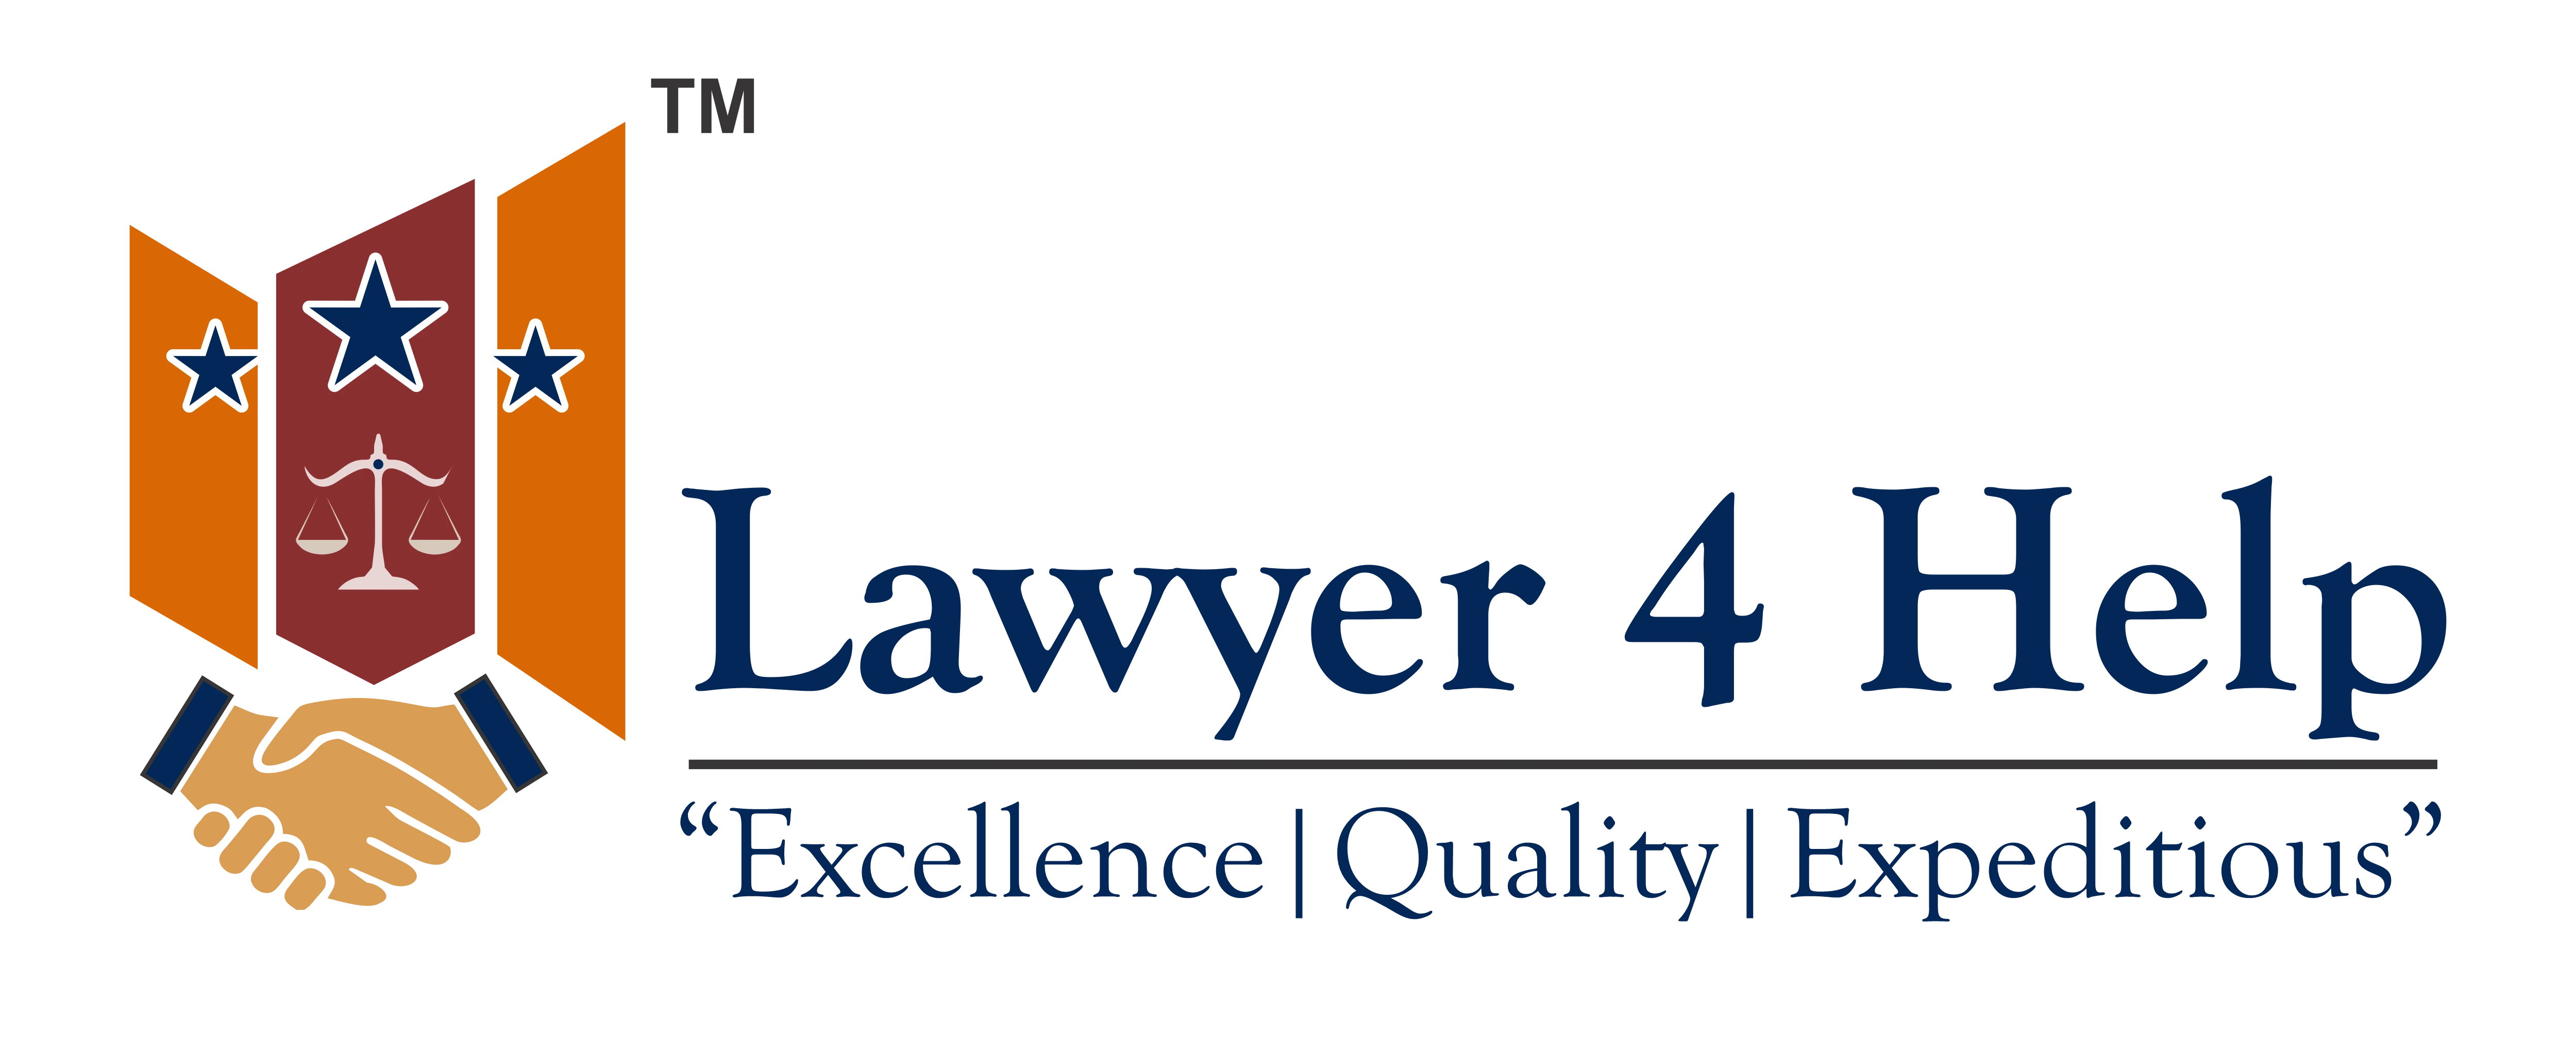 Personal Injyury Lawyers & Medical Malpractice attorney USA - Lawyer4help